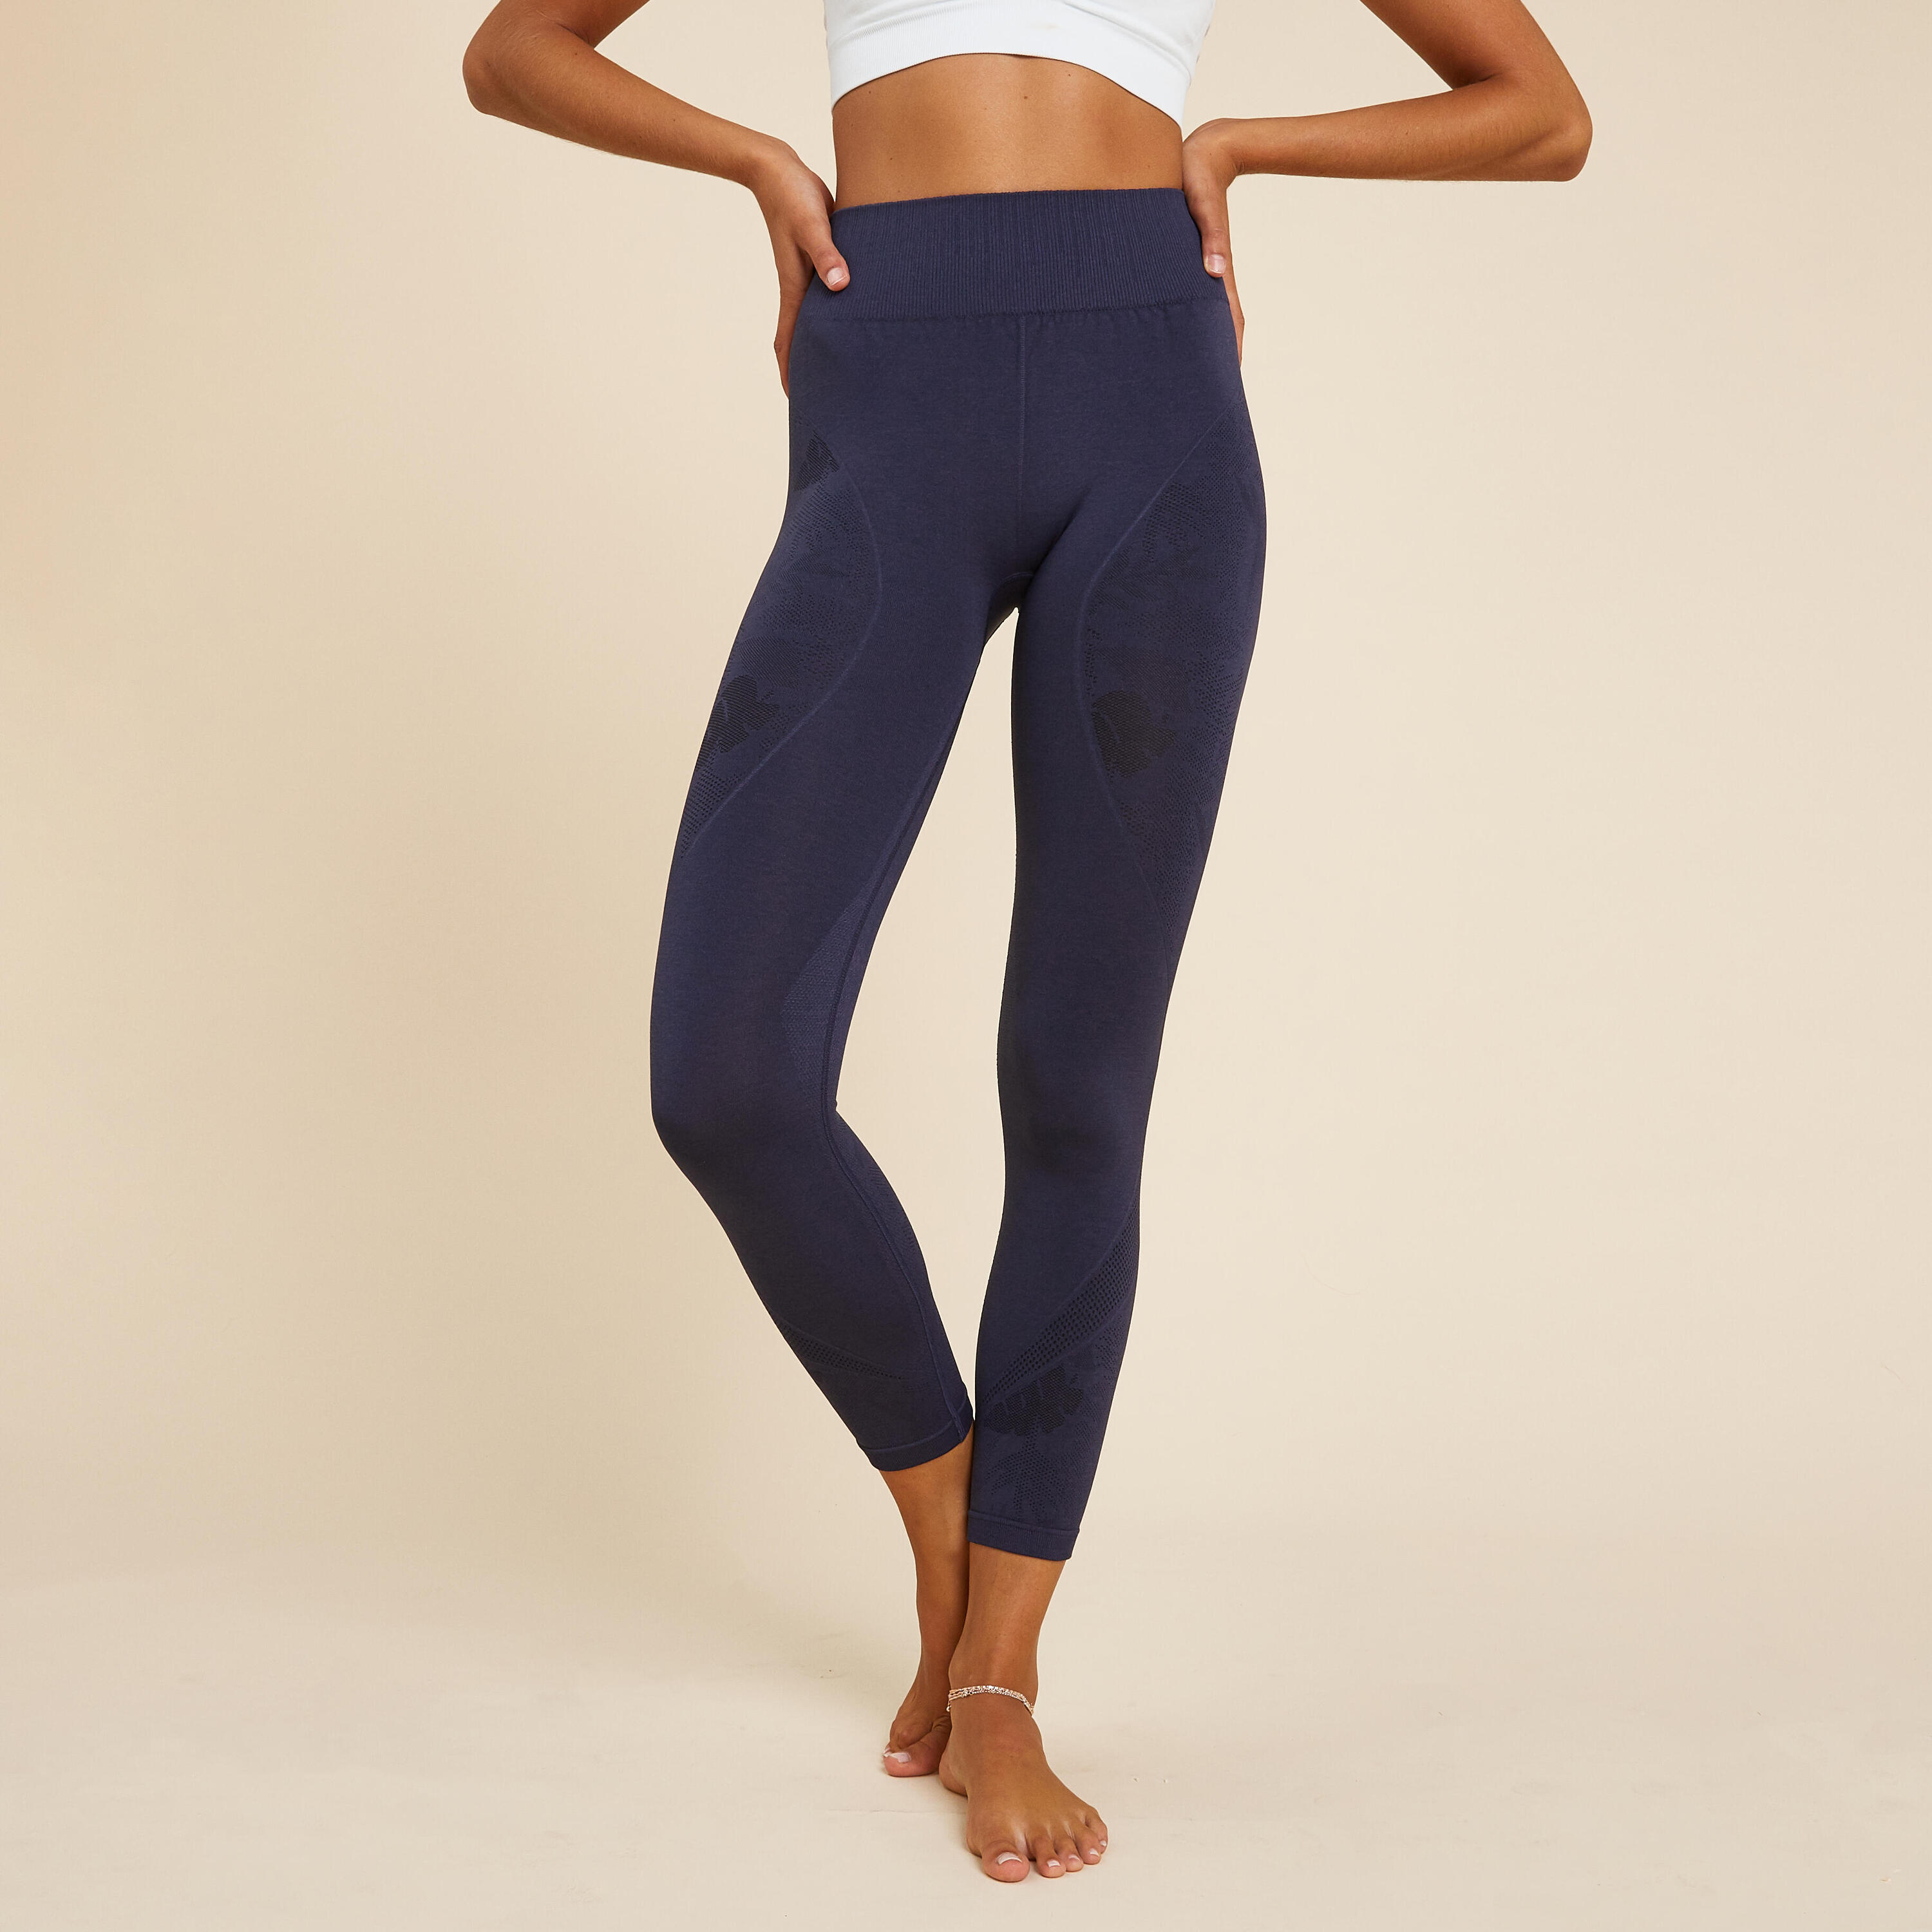 KIMJALY Women's Seamless 7/8-Length Dynamic Yoga Leggings - Dark Mottled Blue